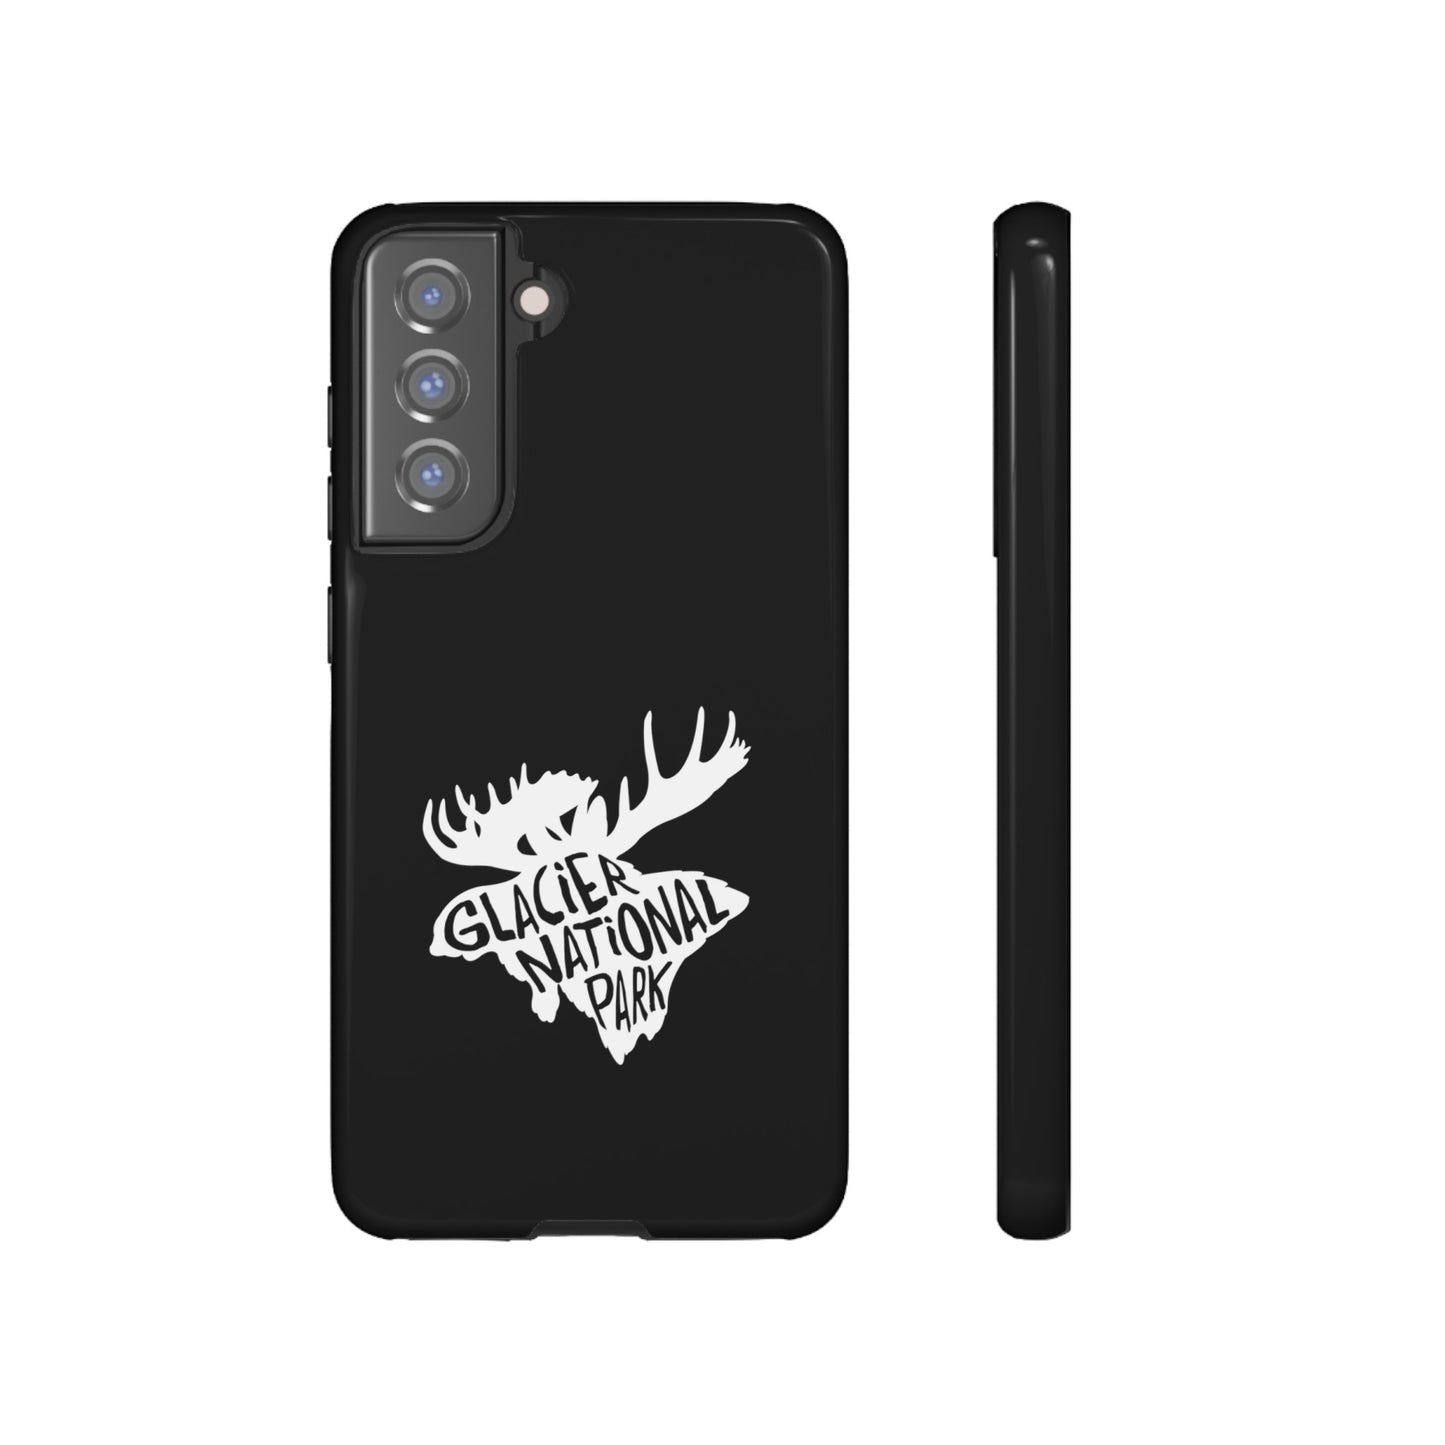 Glacier National Park Phone Case - Moose Design